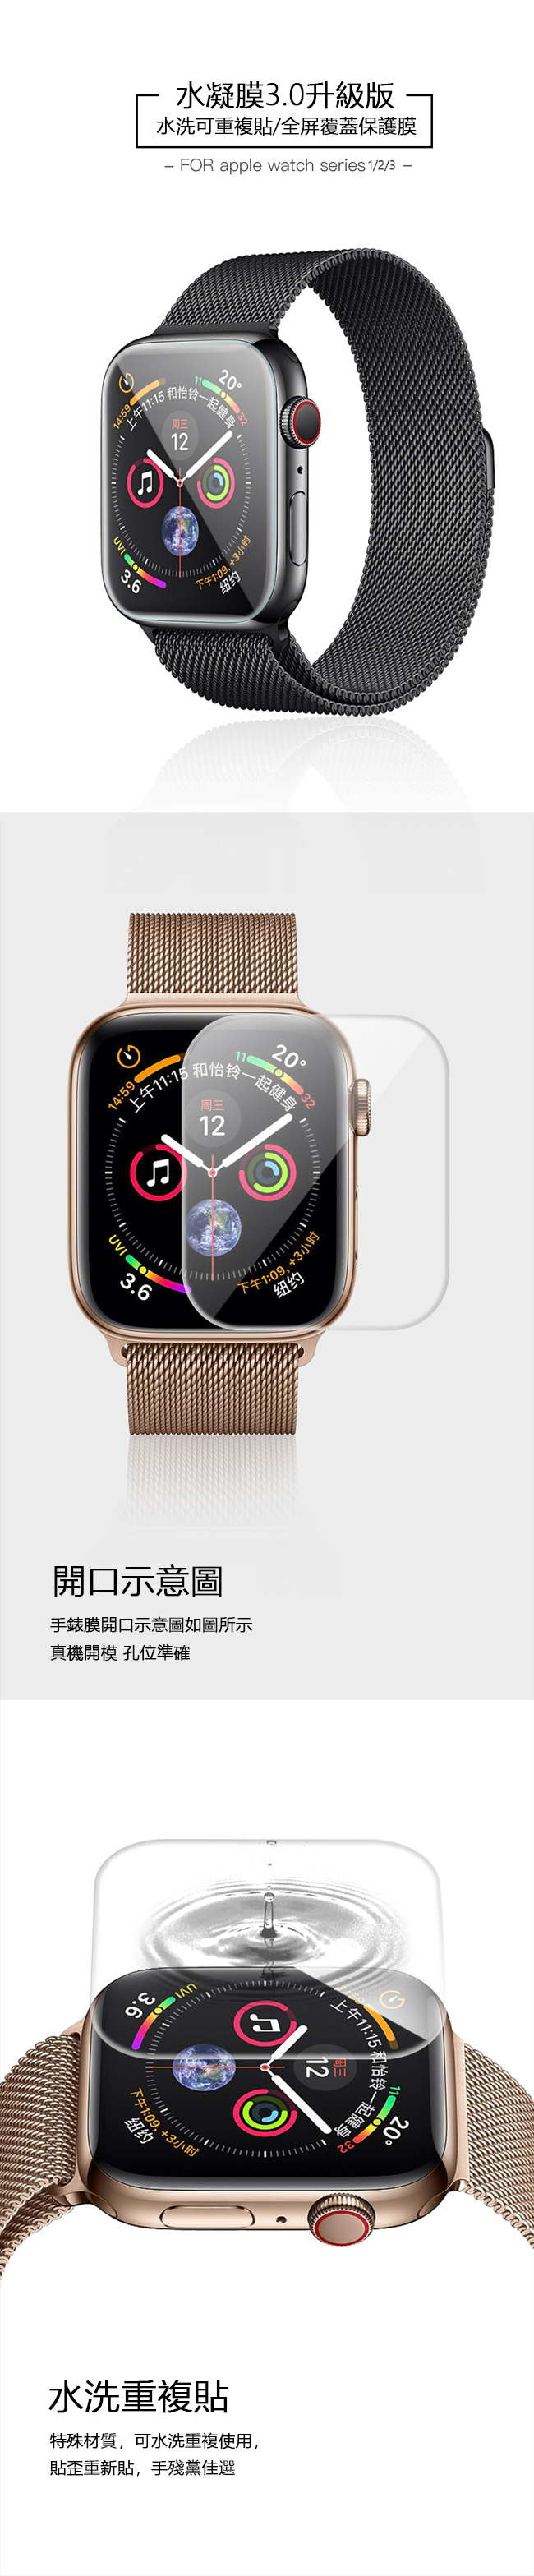 2張裝 Apple Watch 1/2/3代 水凝膜 高清滿版 防爆 手錶保護貼